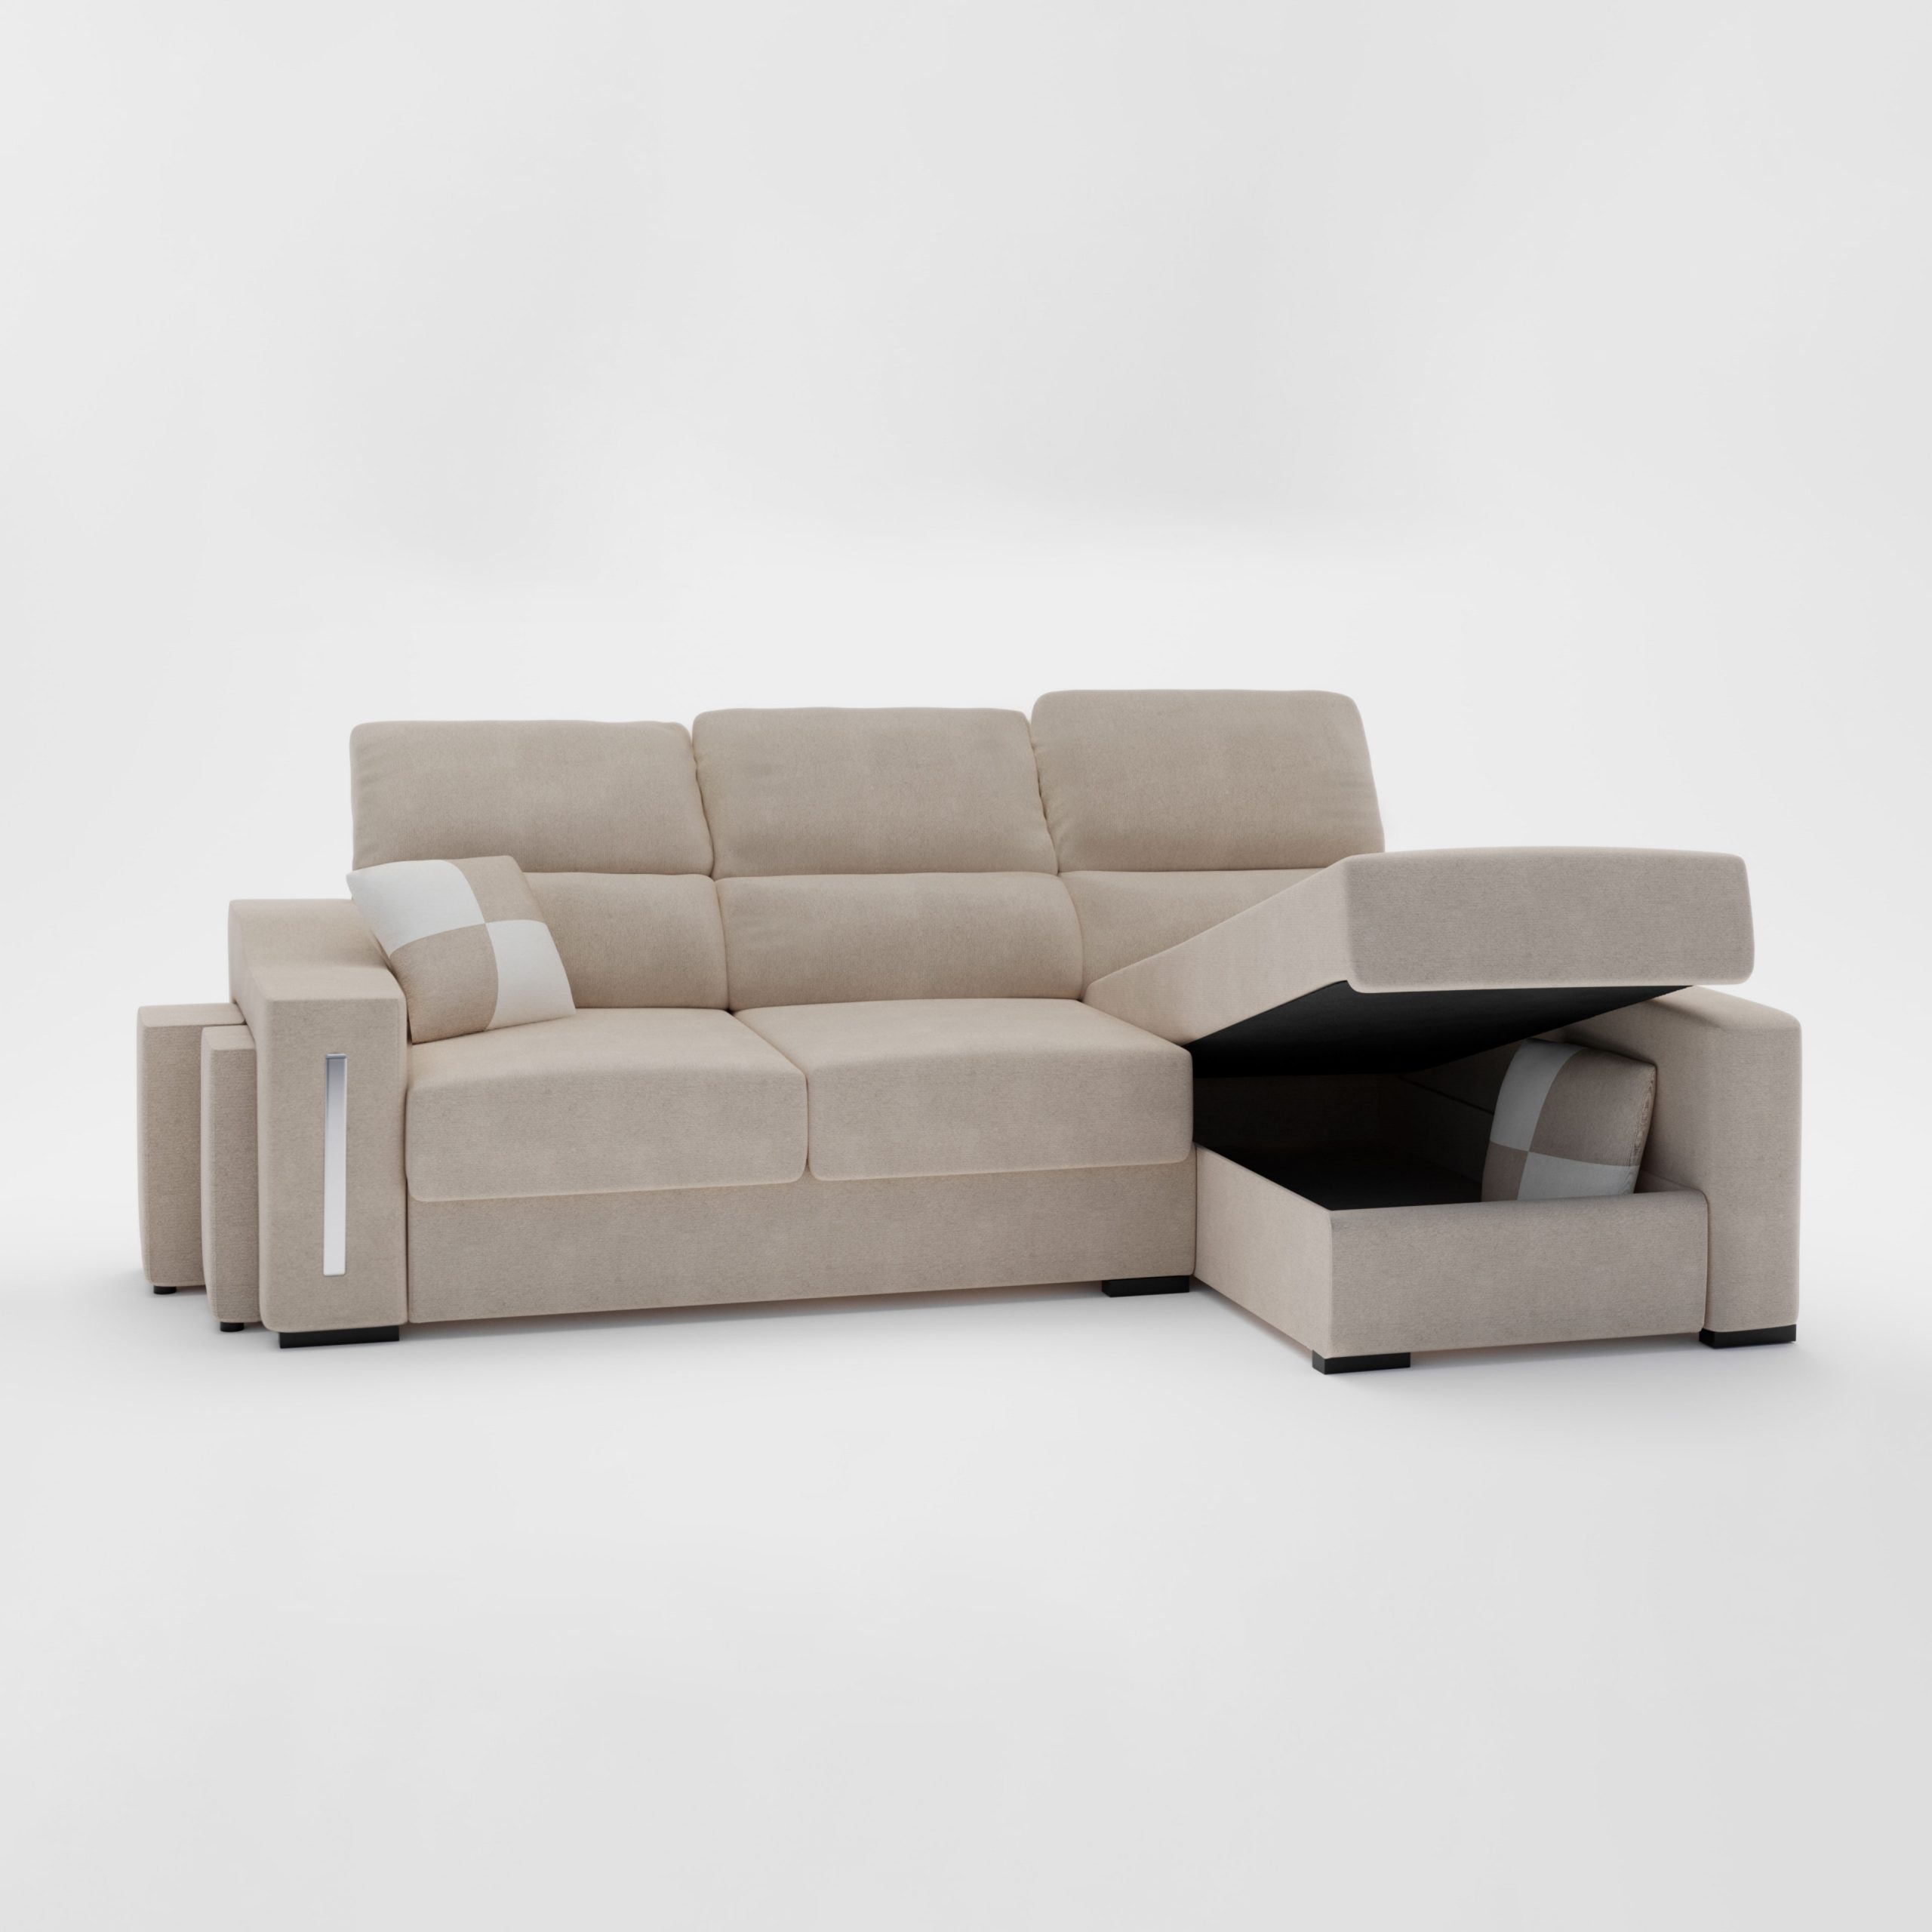 Render de producto Muebles boom sofa inclinado y abierto